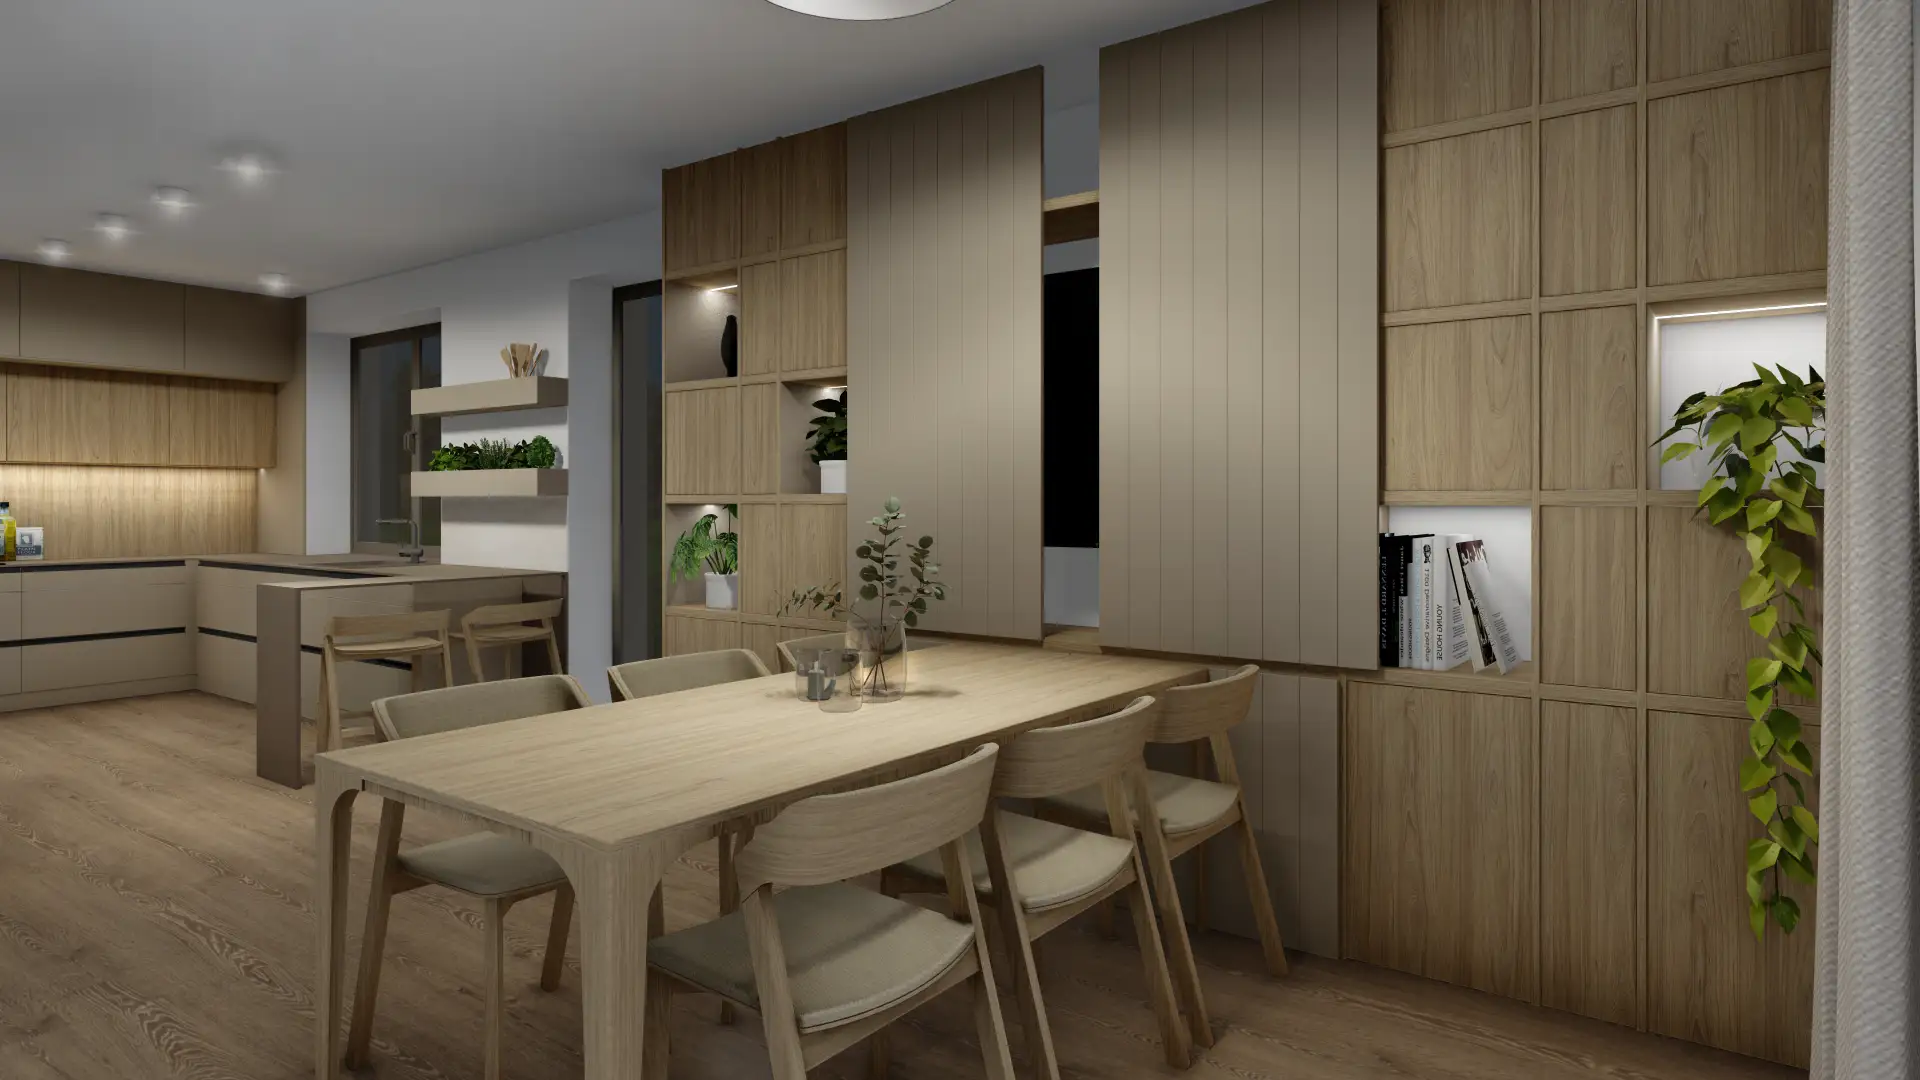 Návrh interiéru Karlovy Vary, obývací pokoj s kuchyní